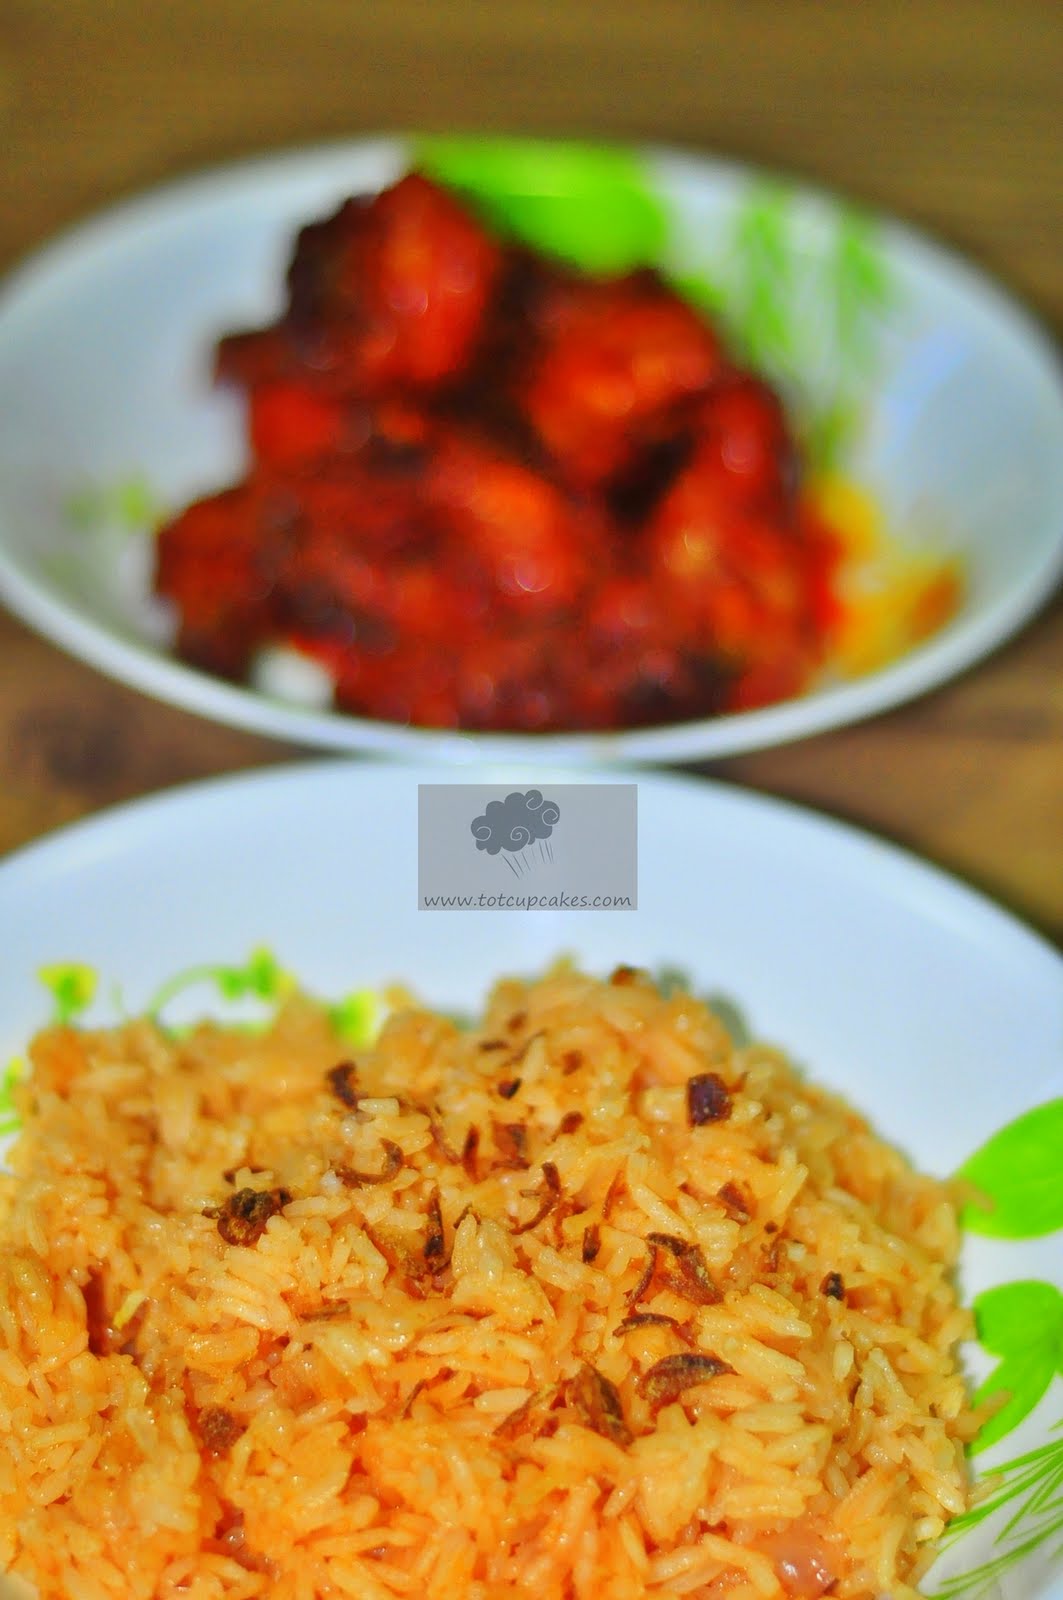 Tot bake and design: Resepi - Nasi Tomato & Ayam Masak Merah